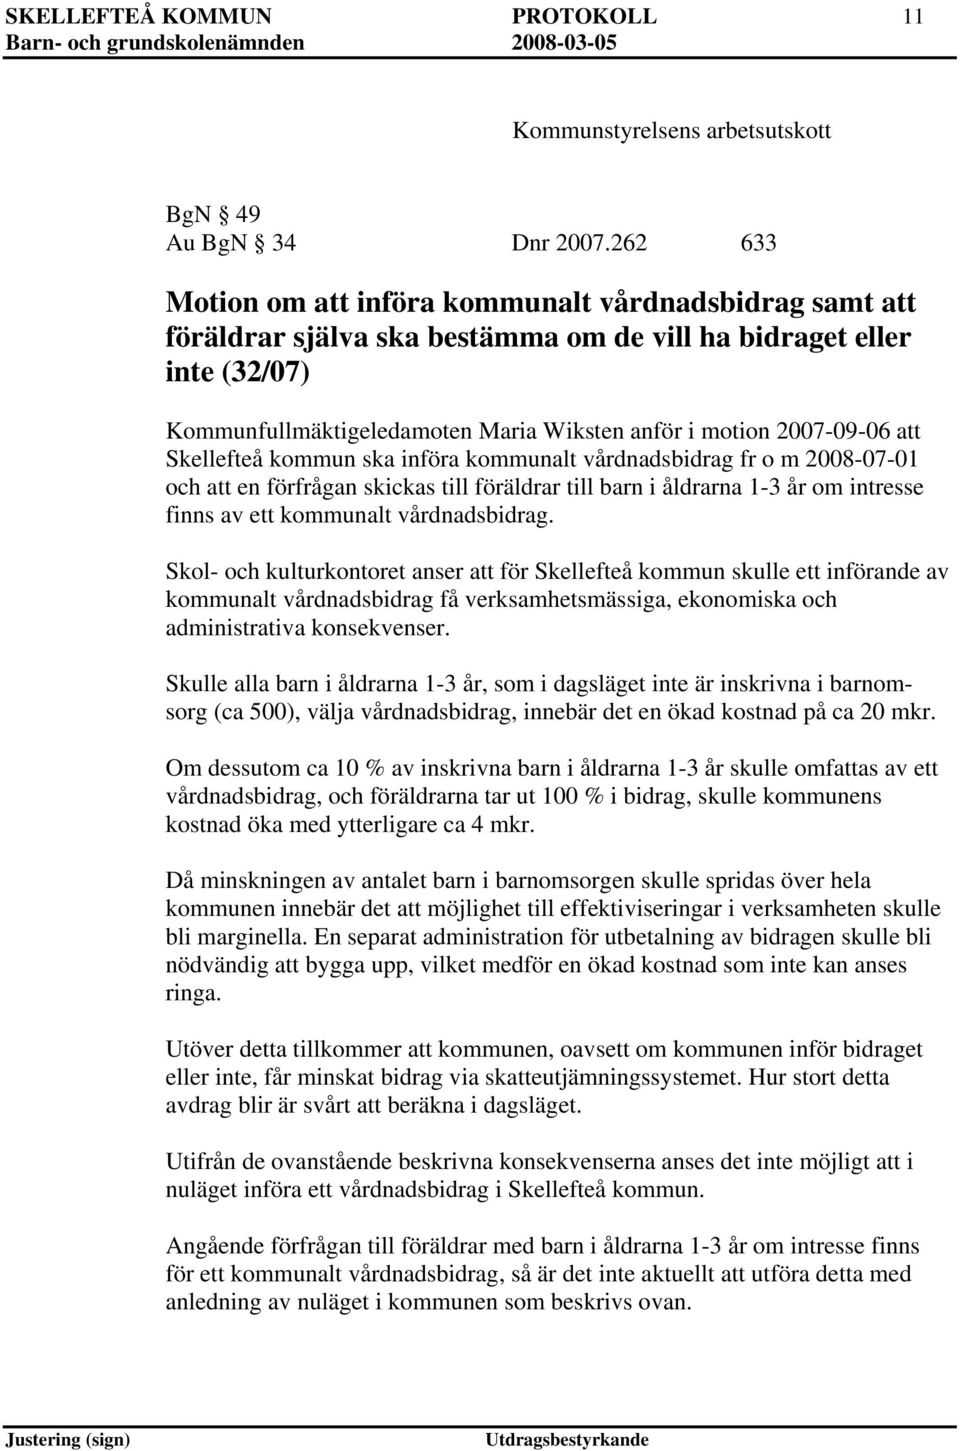 Skellefteå kommun ska införa kommunalt vårdnadsbidrag fr o m 2008-07-01 och en förfrågan skickas till föräldrar till barn i åldrarna 1-3 år om intresse finns av ett kommunalt vårdnadsbidrag.